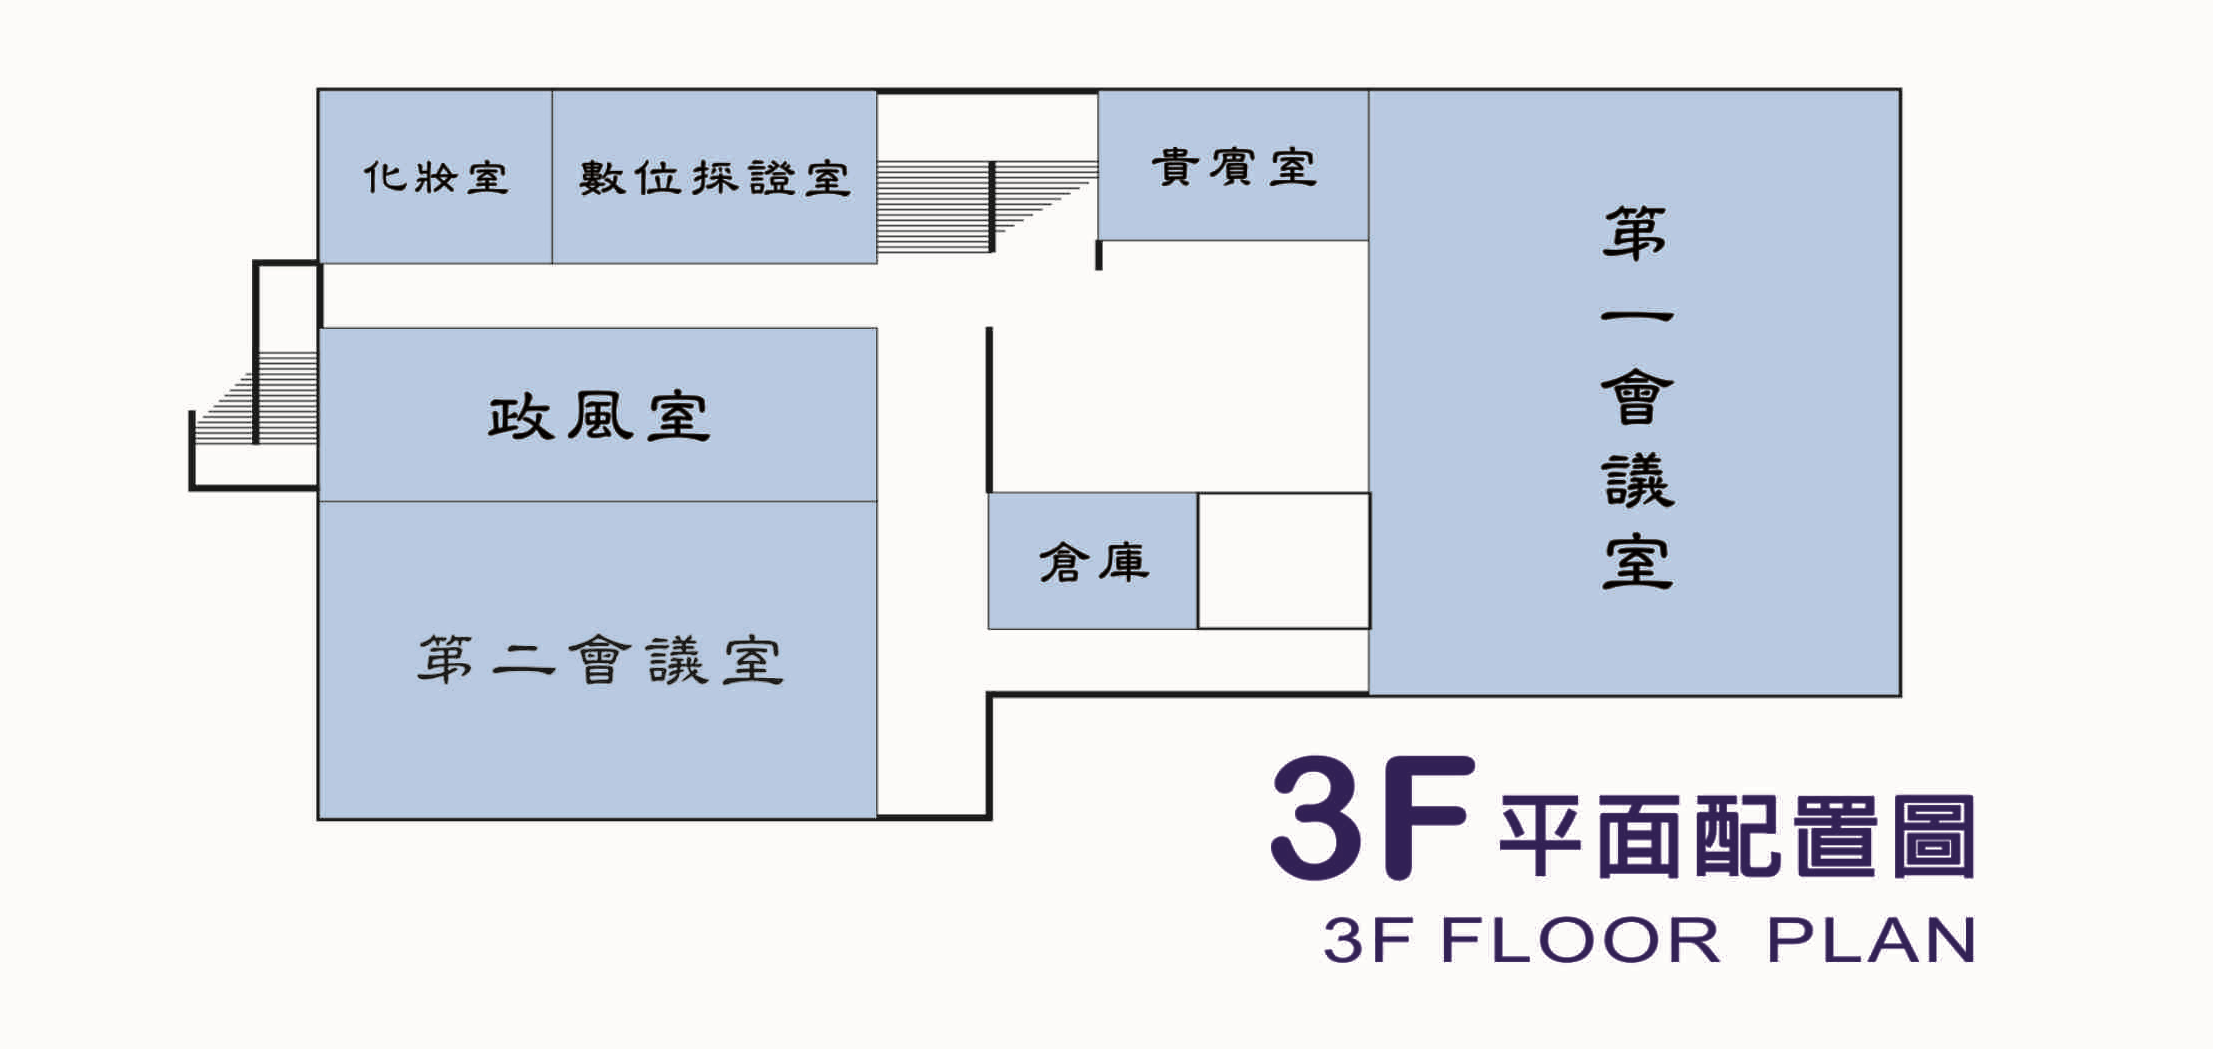 第一辦公室三樓平面配置圖